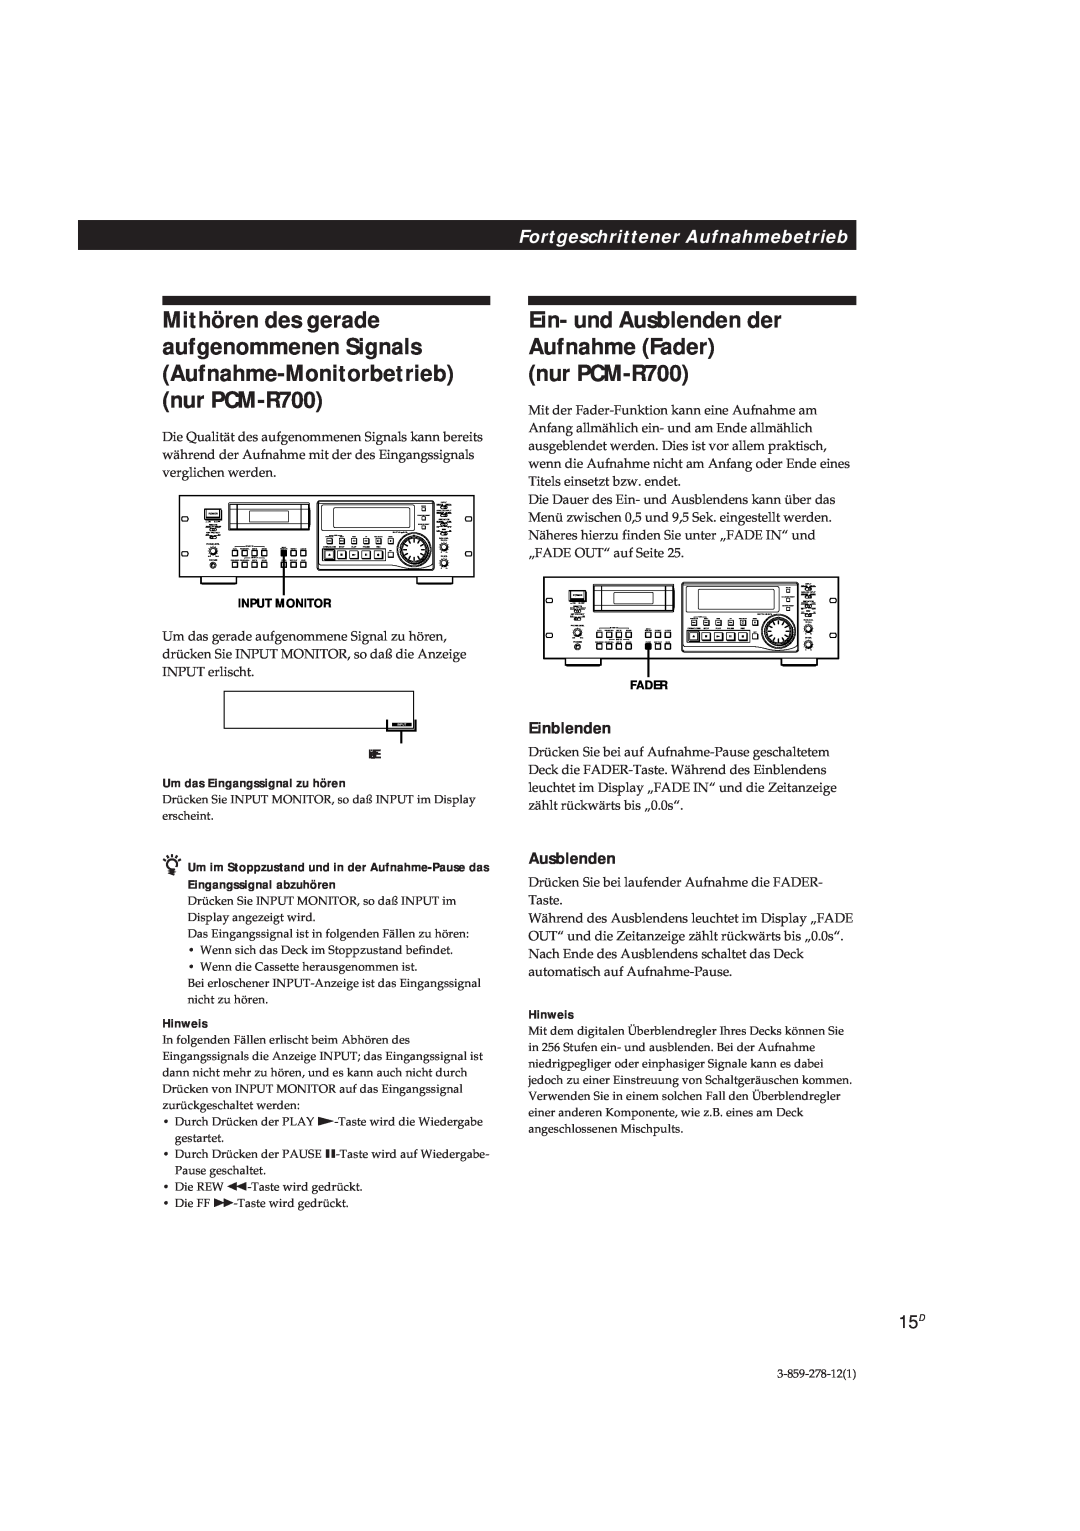 Sony manual Ein- und Ausblenden der Aufnahme Fader, nur PCM-R700, Fortgeschrittener Aufnahmebetrieb, Einblenden, Hinweis 